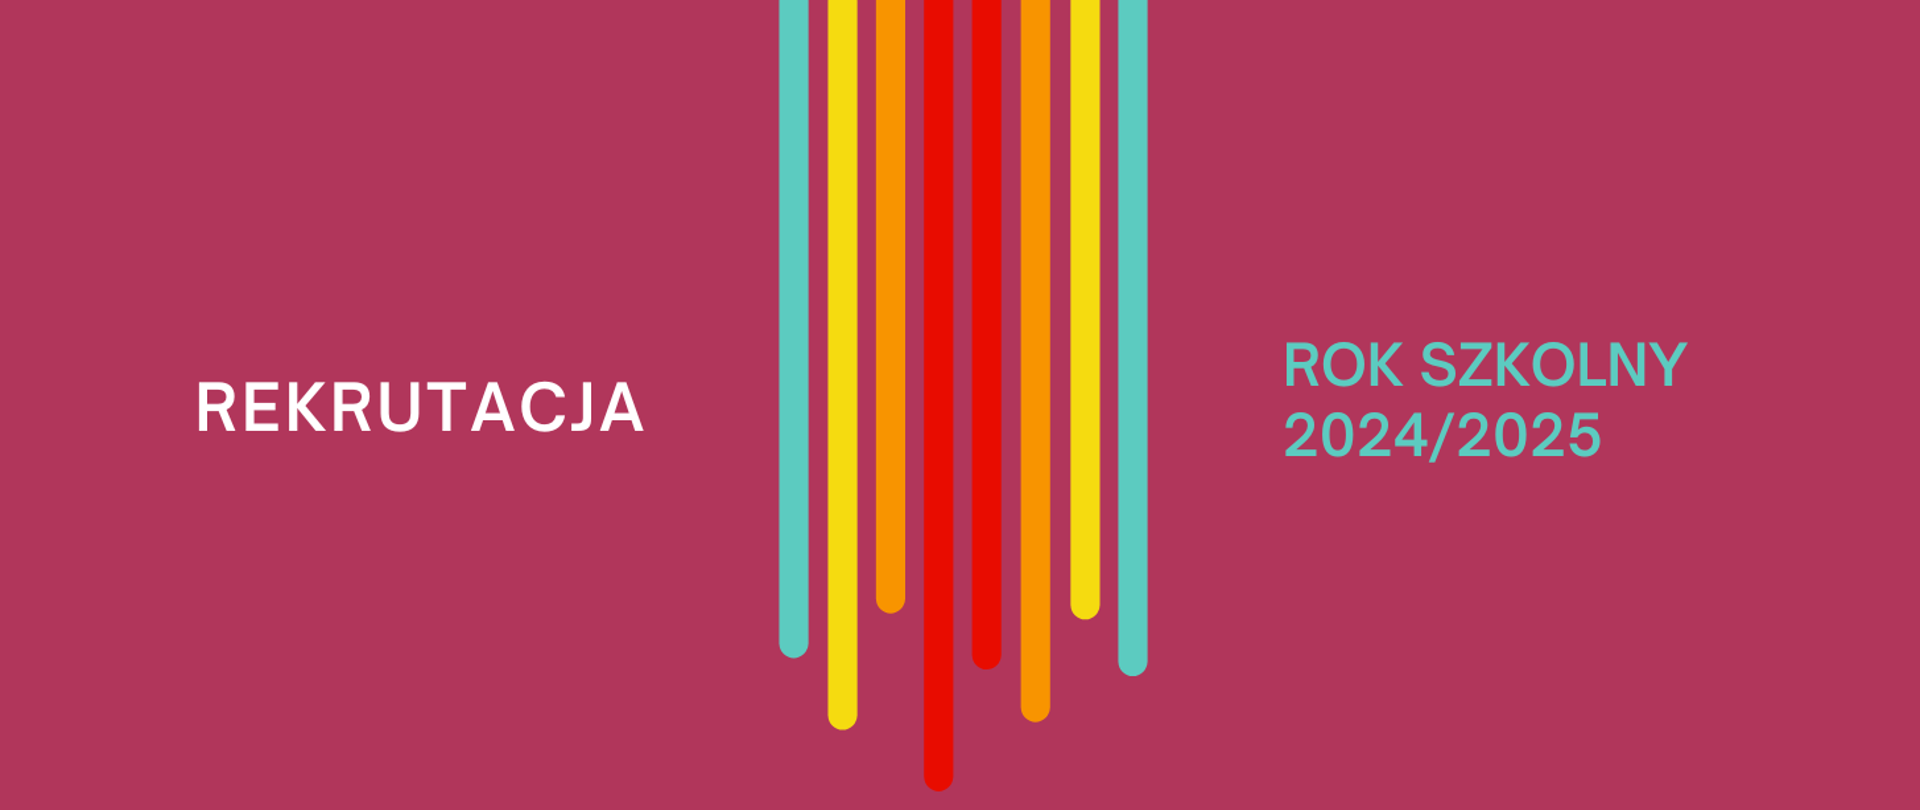 Grafika na ciemnoróżowym tle z kolorowymi - pionowymi elementami graficznymi po środku i tekstem "Rekrutacja na rok szkolny 2024/2025"